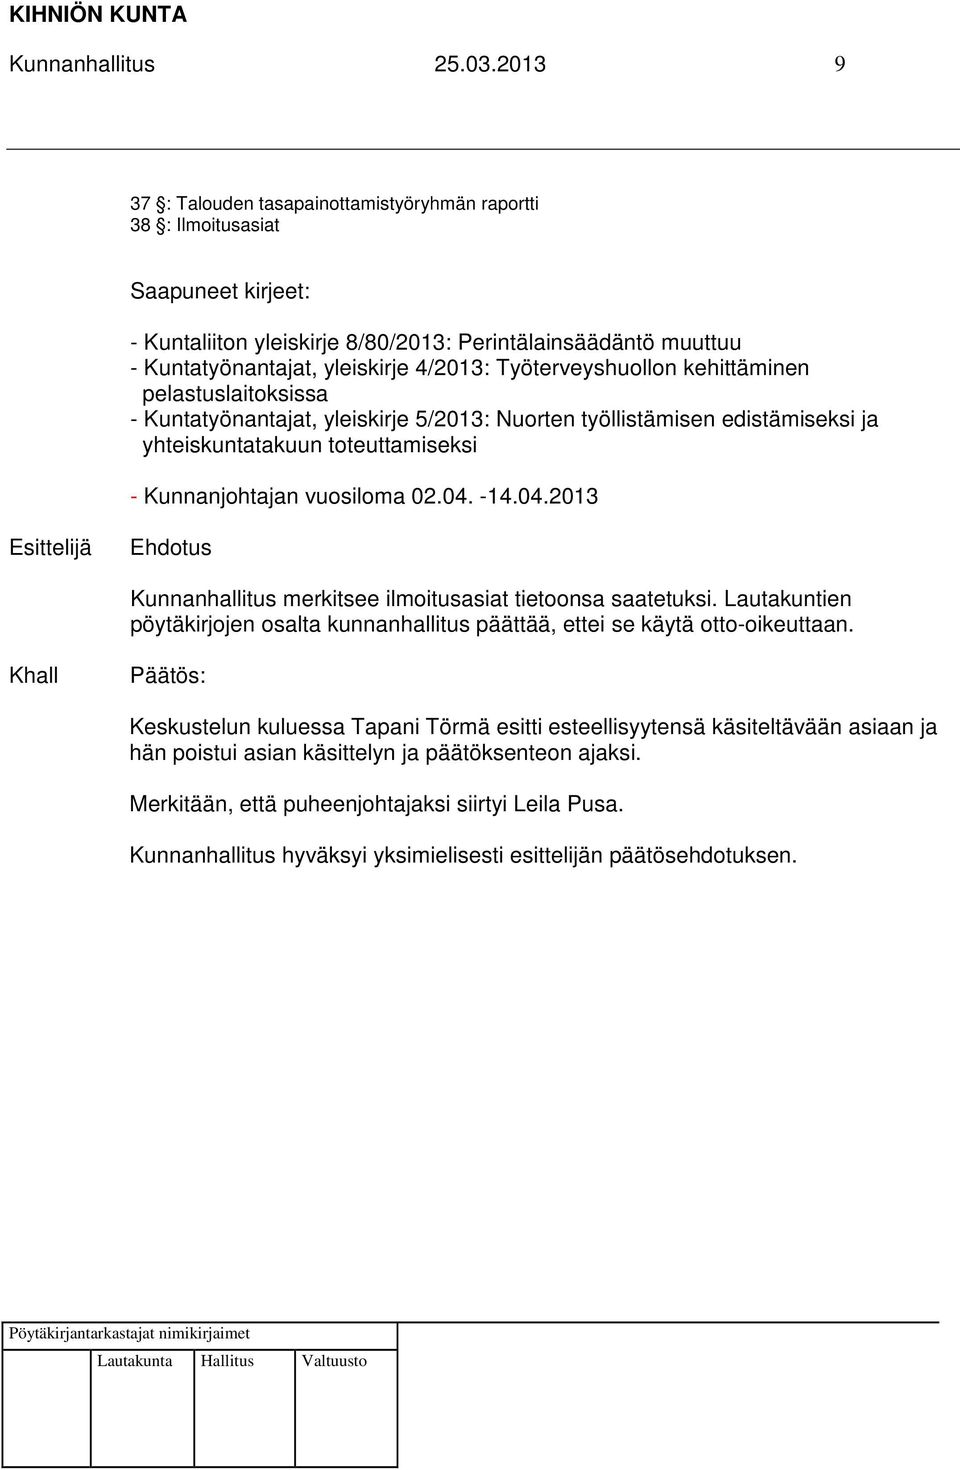 4/2013: Työterveyshuollon kehittäminen pelastuslaitoksissa - Kuntatyönantajat, yleiskirje 5/2013: Nuorten työllistämisen edistämiseksi ja yhteiskuntatakuun toteuttamiseksi - Kunnanjohtajan